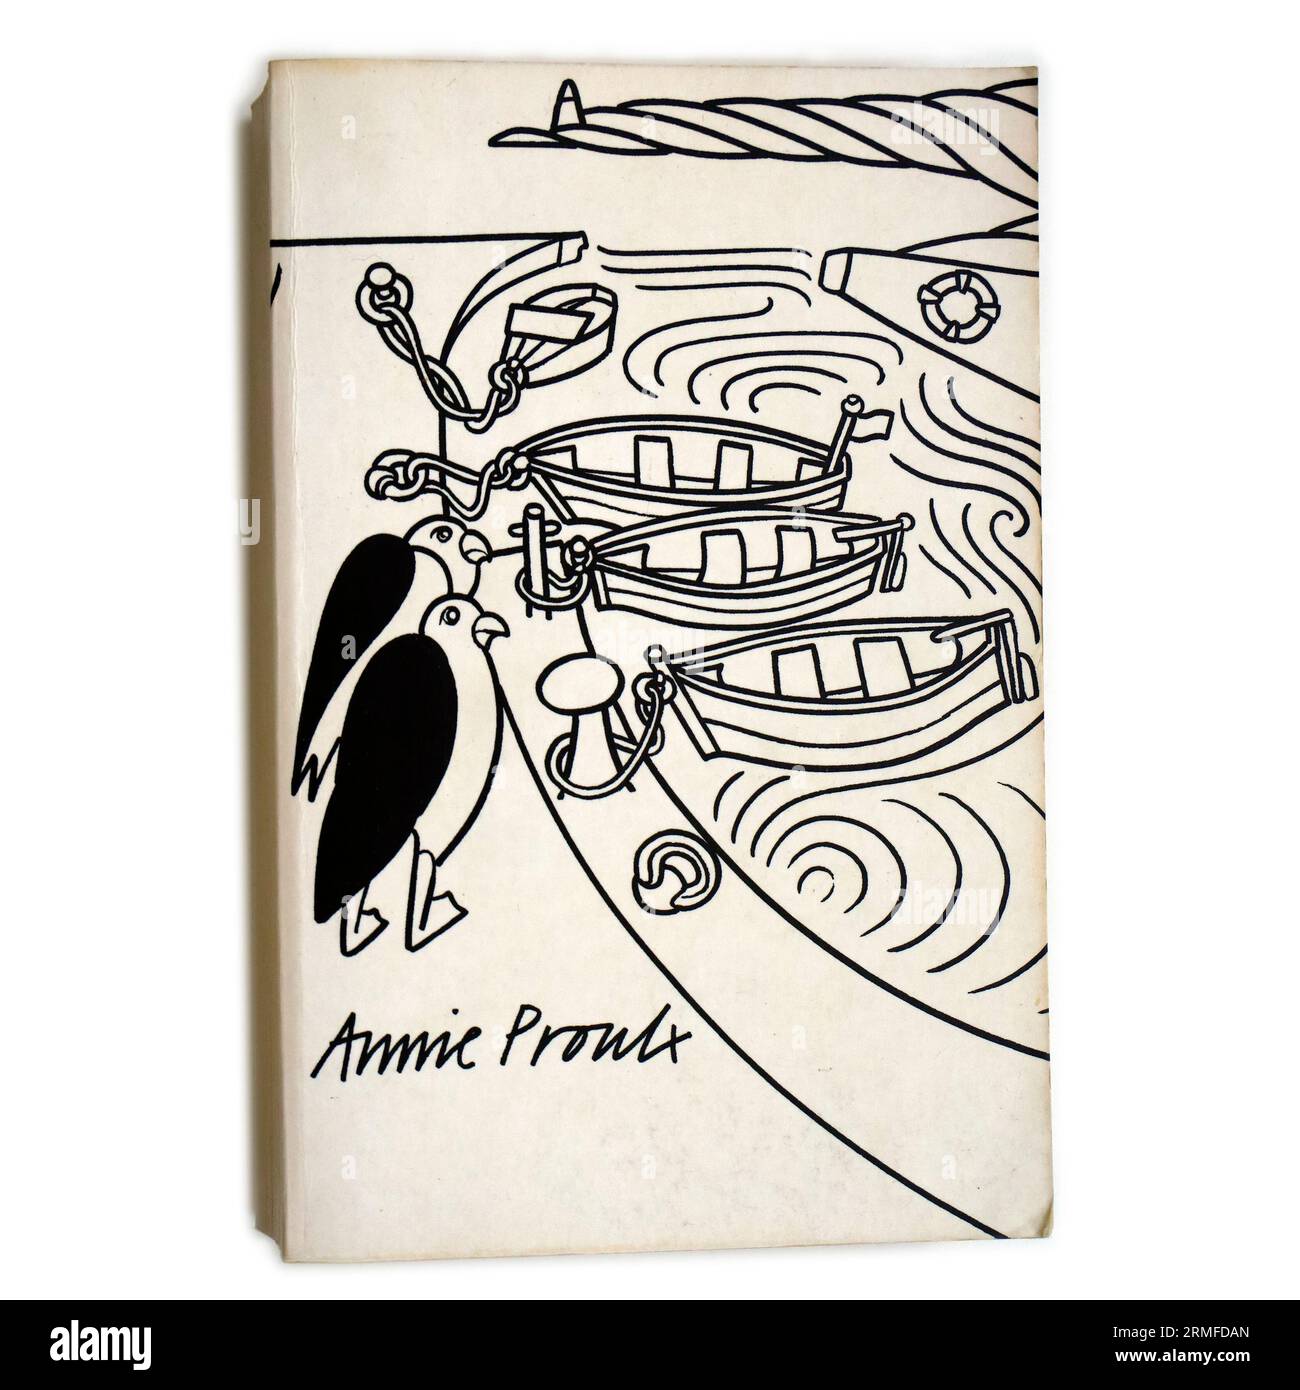 The Shipping News par Annie Proulx. Couverture de livre sur fond blanc. A remporté le prix Pulitzer pour la fiction et le prix national du livre américain pour la fiction Banque D'Images